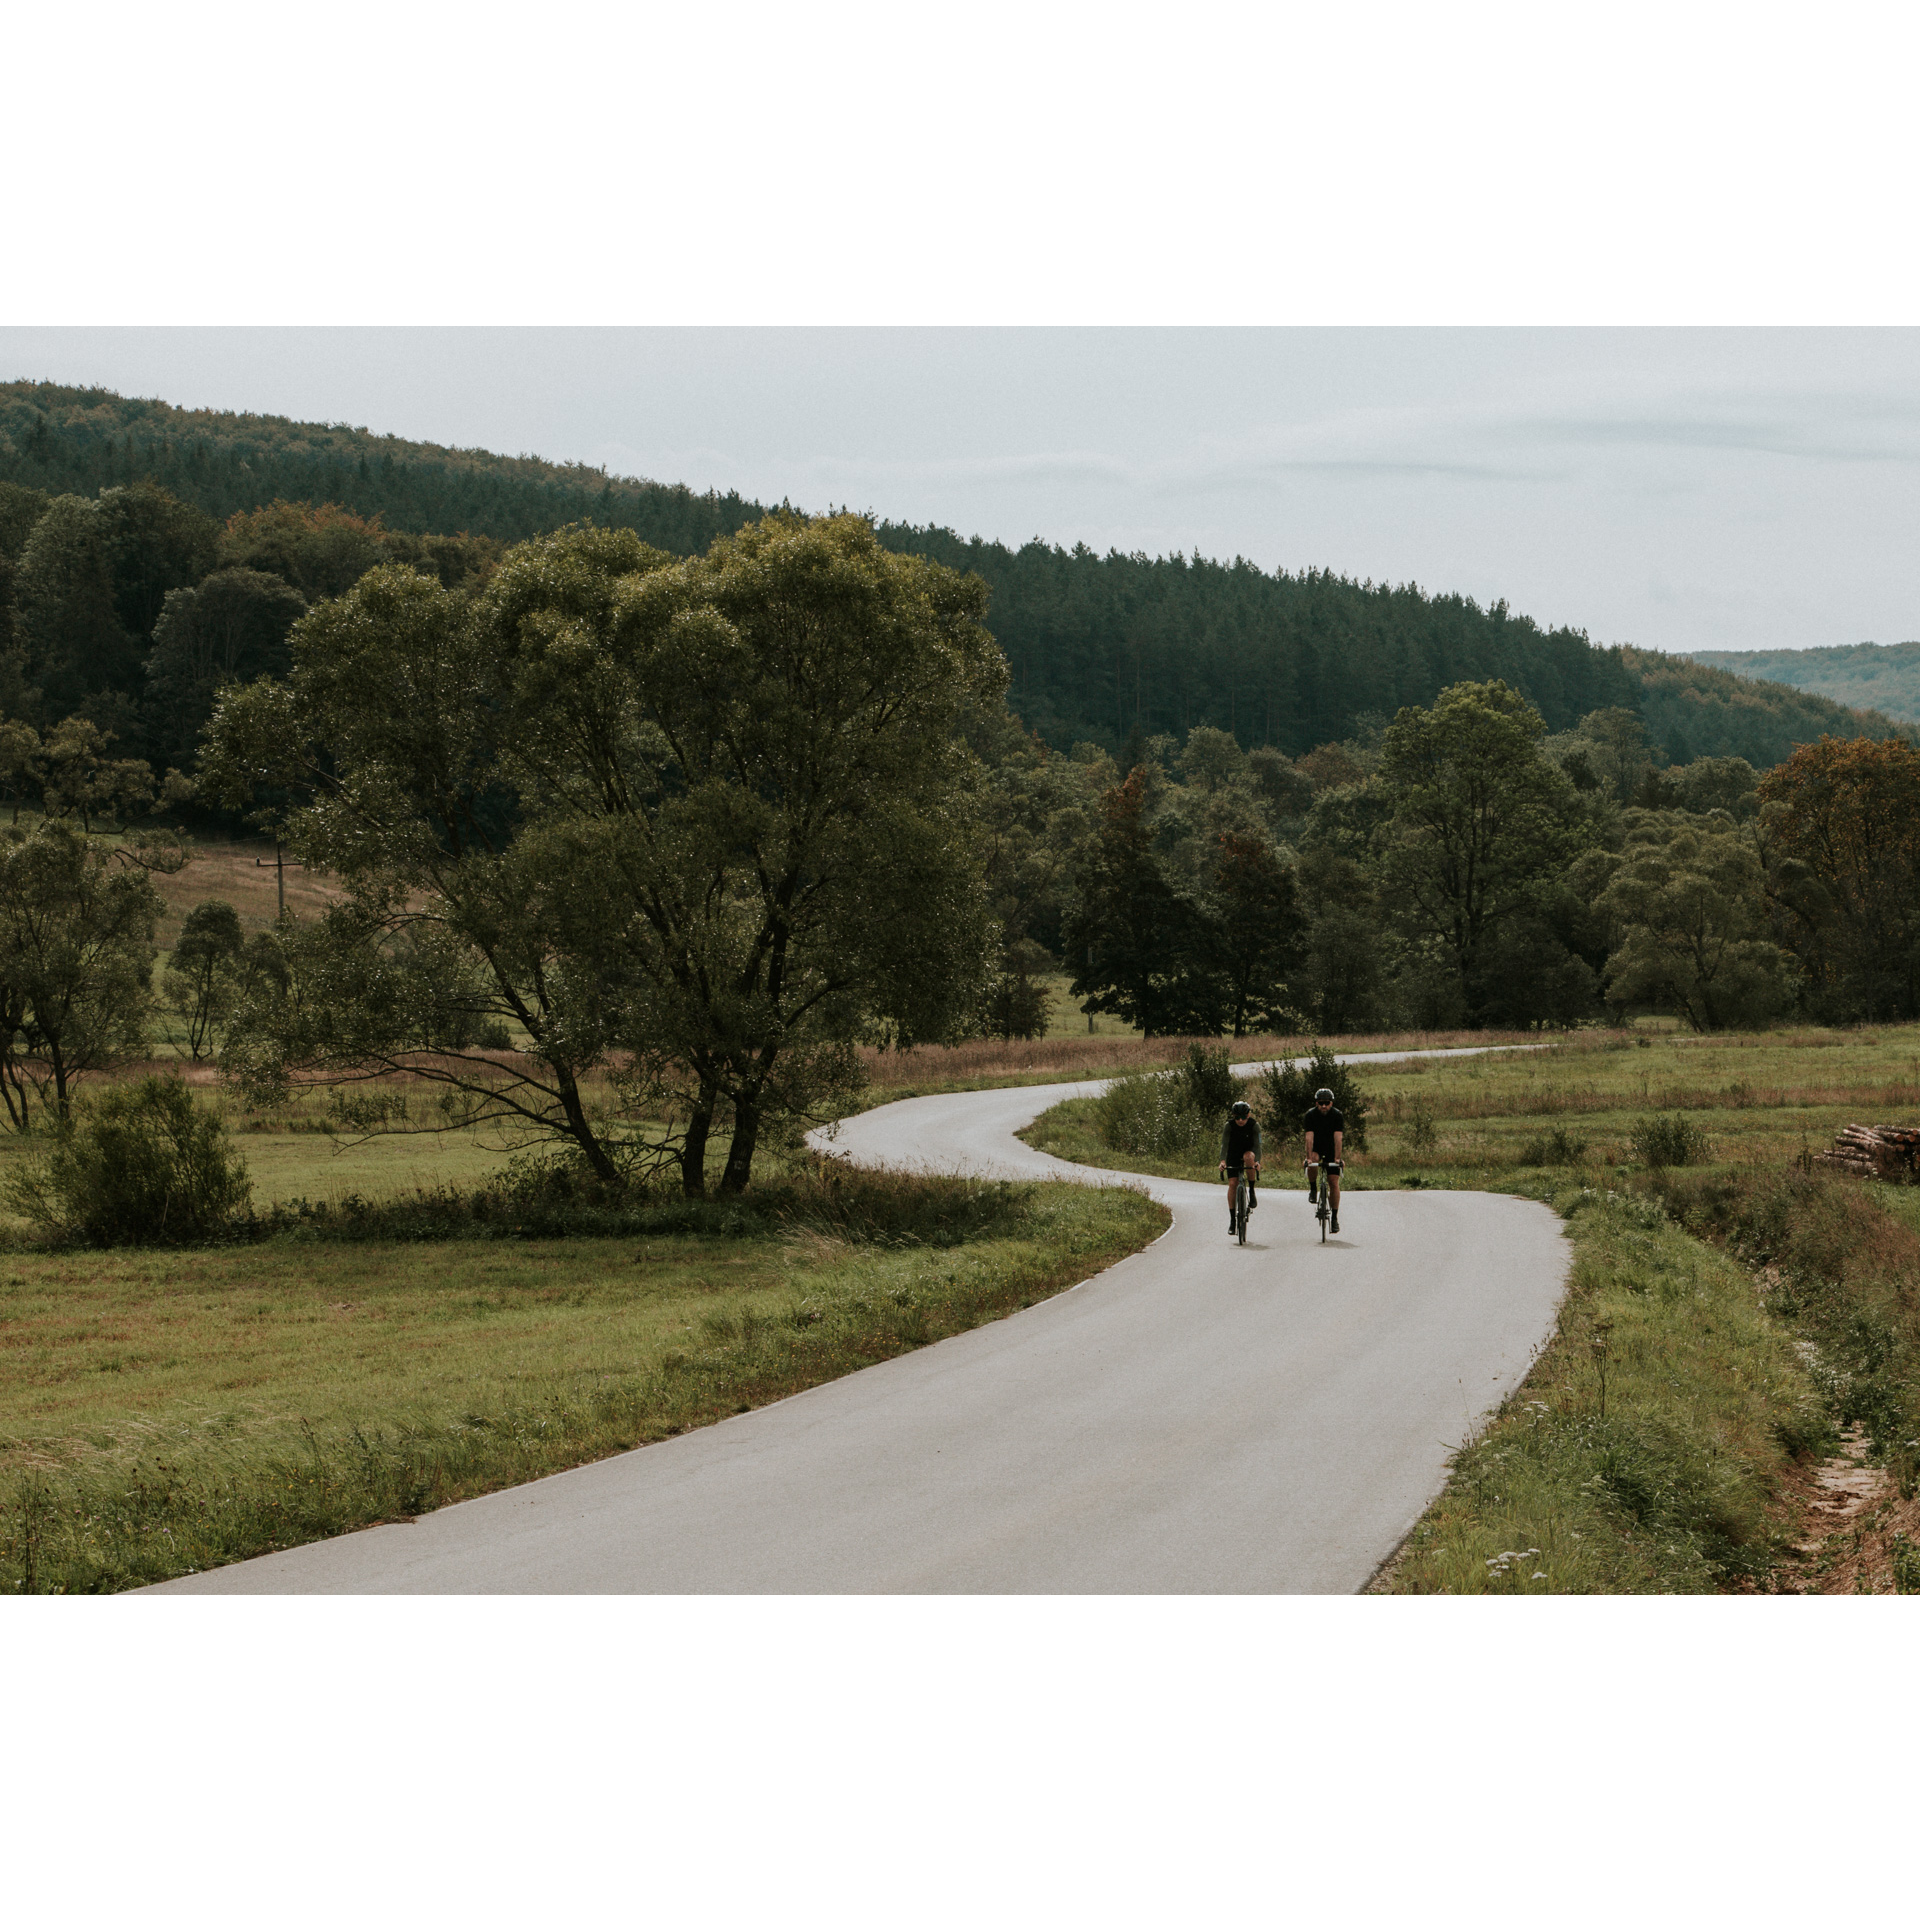 Dwóch kolarzy w czarnych strojach i kaskach jadących na rowerach asfaltową krętą drogą wśród zielonych łąk, drzew i wzgórz